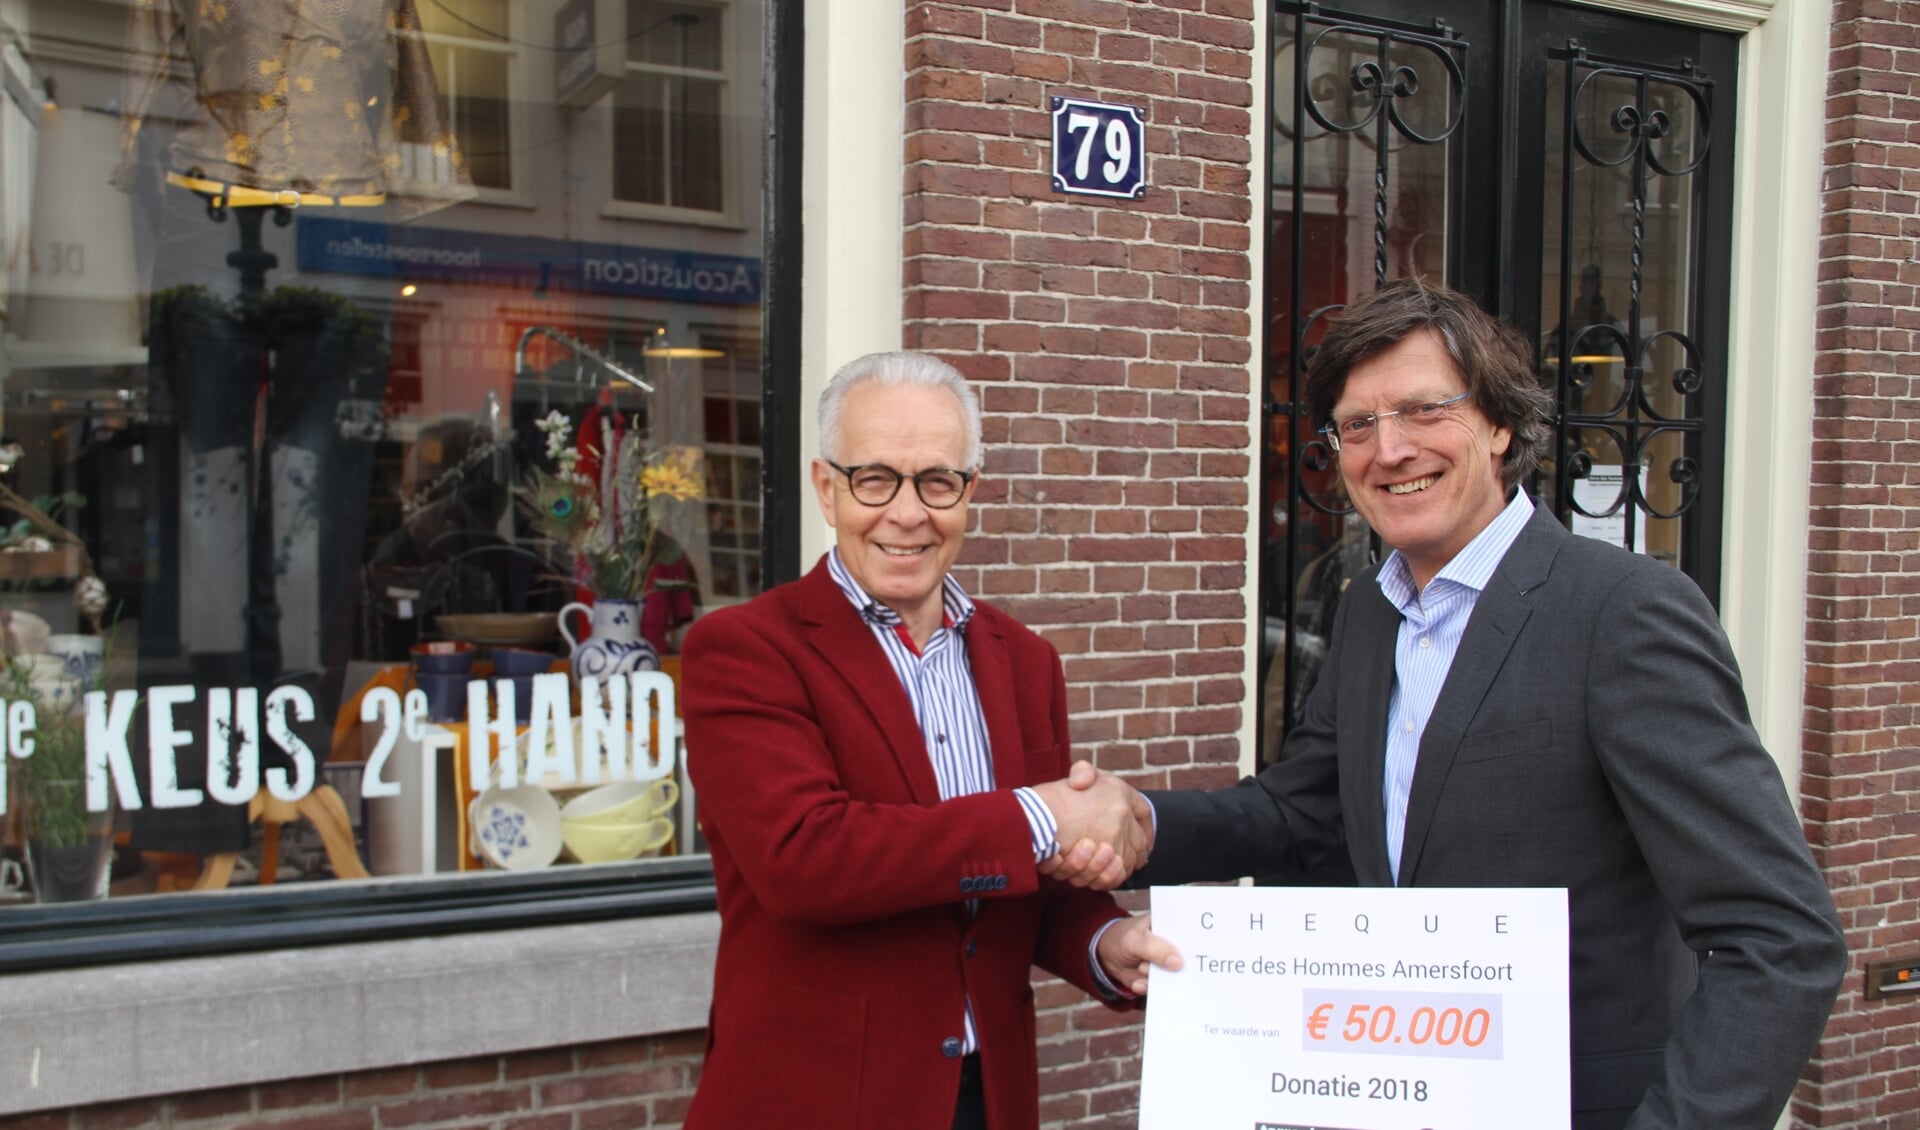 De voorzitter van Terre des Hommes Amersfoort, Hans Gelauff (links op de foto) overhandigt de cheques van € 50.000 aan Albert-Jaap Santbrink van TdH Nederland, de opbrengst 2018 van de winkel op Kamp 79 in Amersfoort